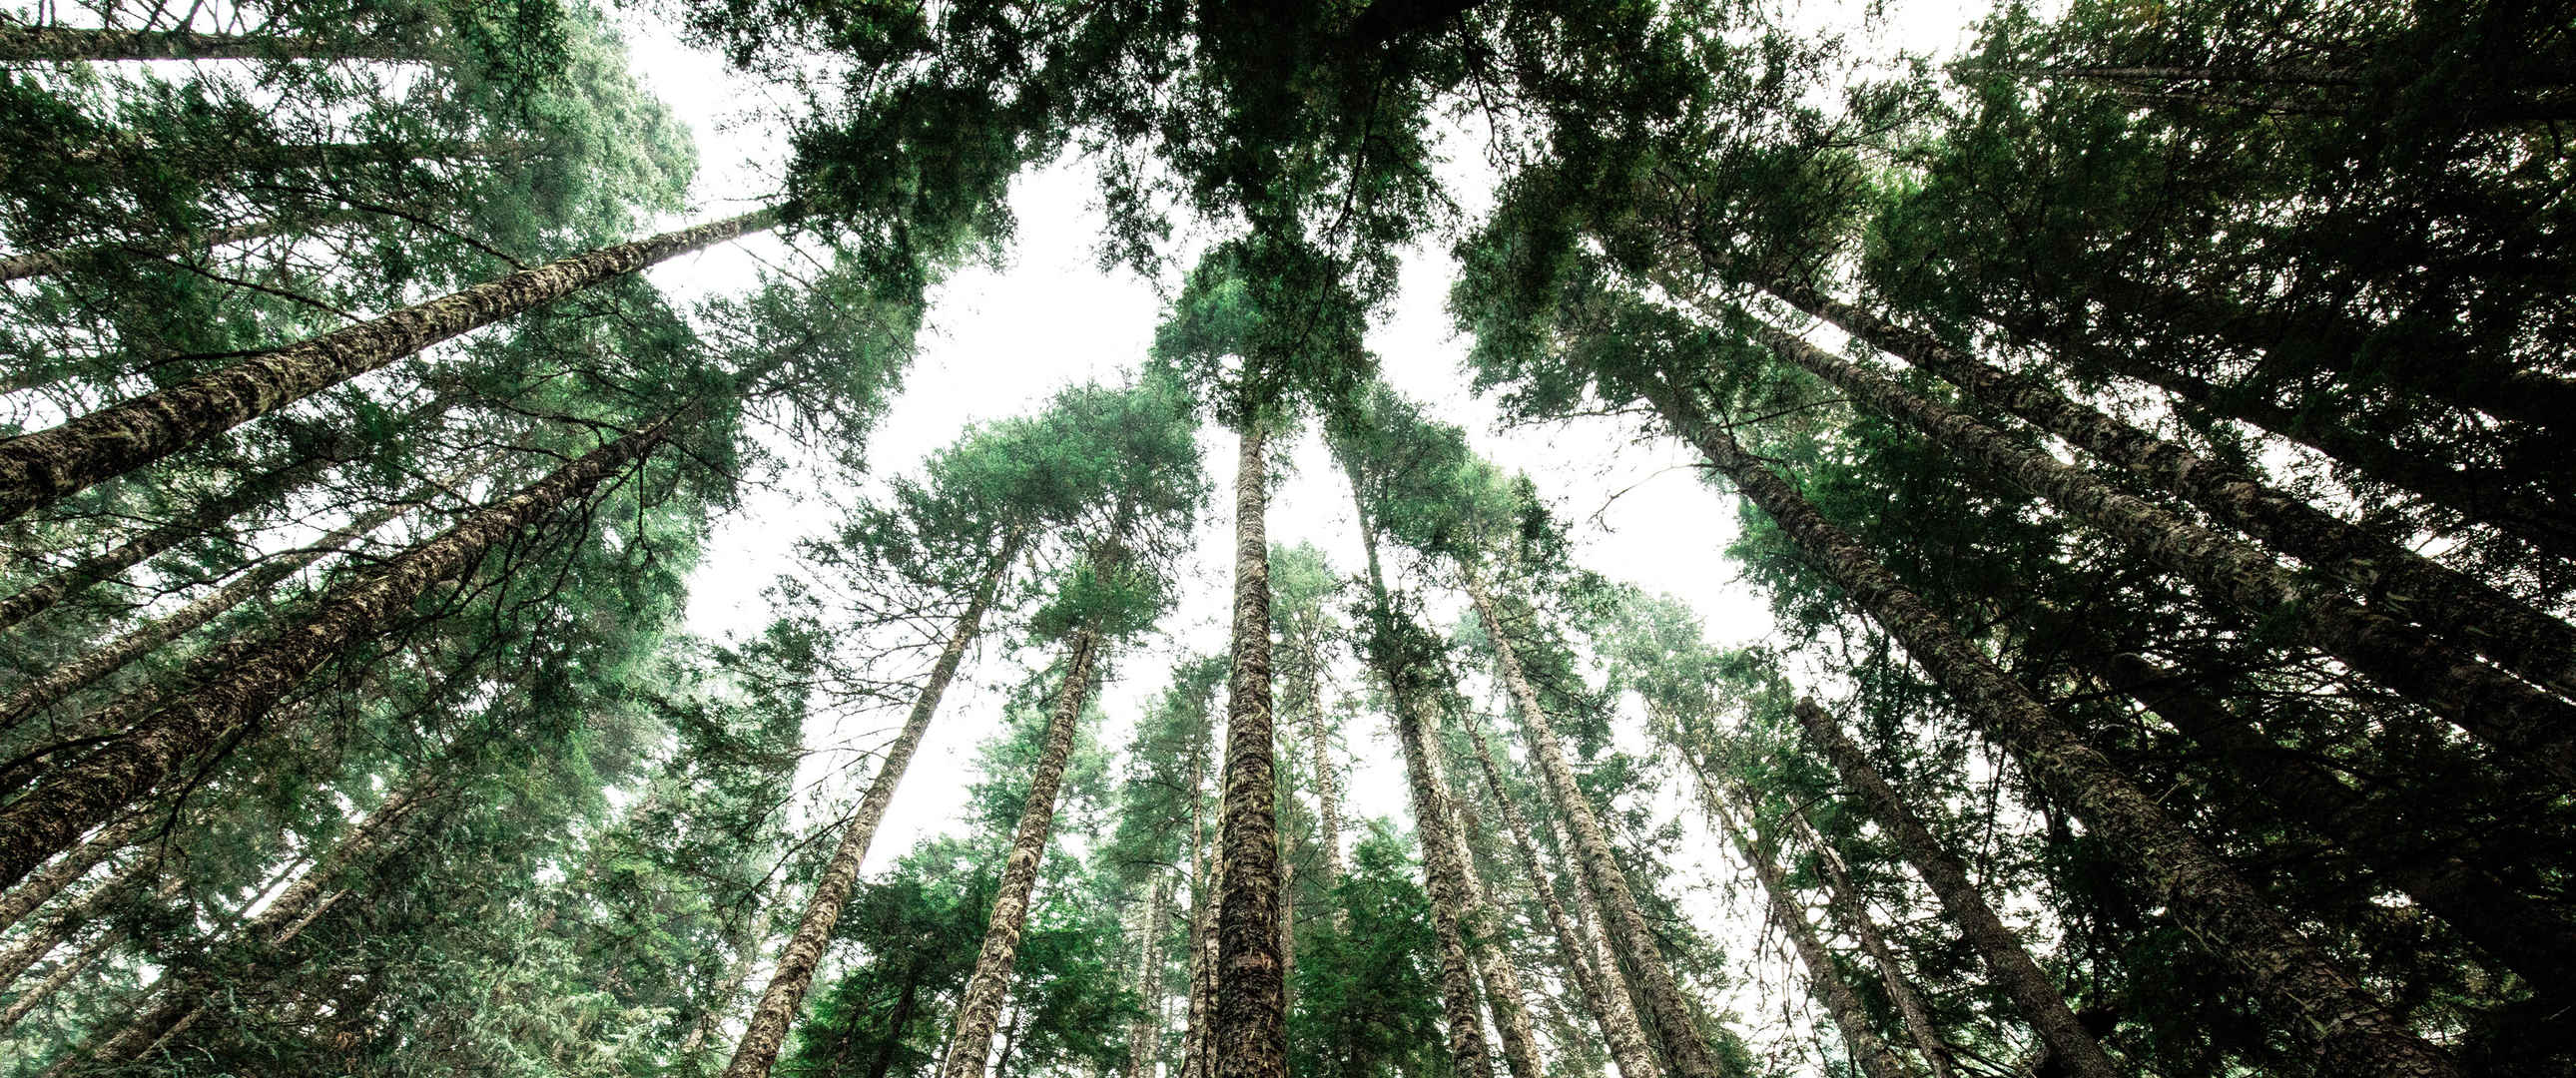 原始森林绿色高大树木3440x1440风景壁纸-